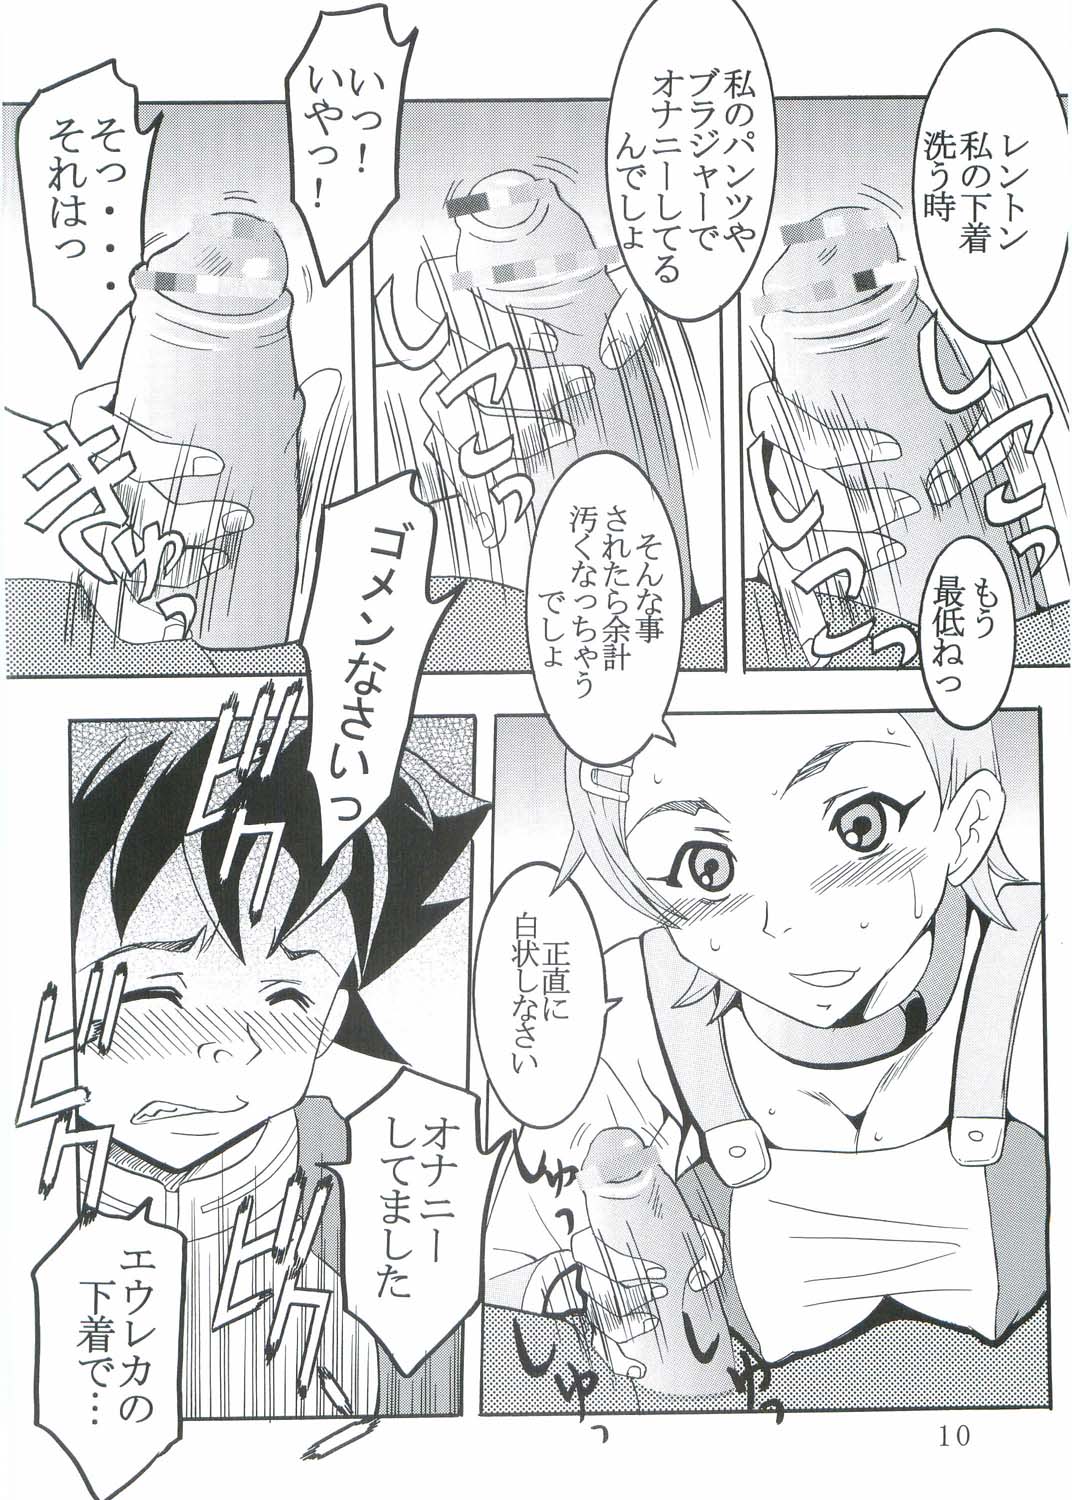 [St. Rio (Kitty, Kouenji Rei)] Ura ray-out (Eureka seveN) page 11 full